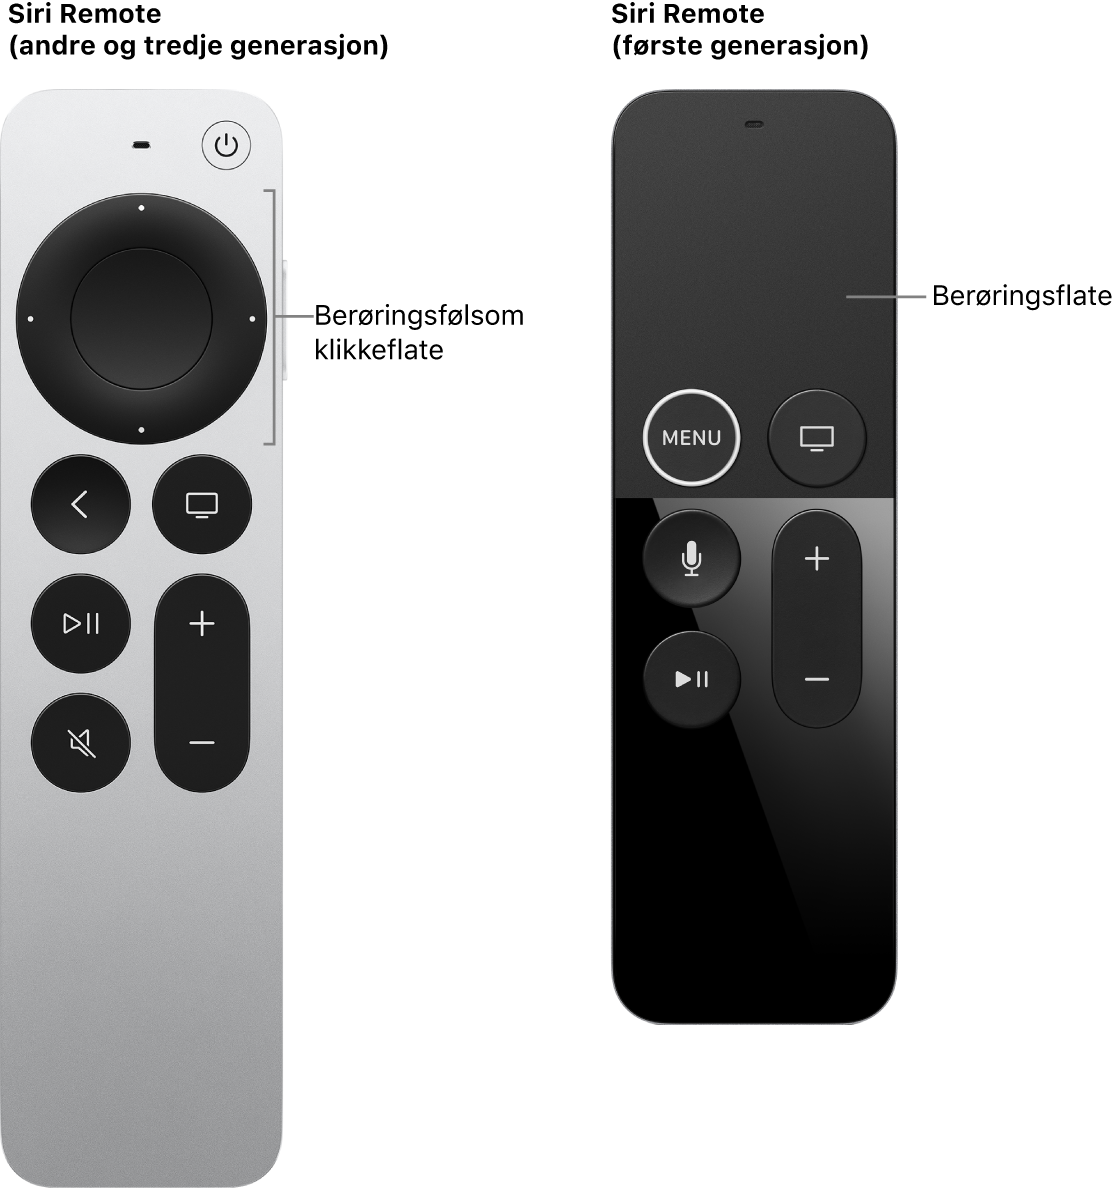 Siri Remote (andre og tredje generasjon) med trykkflate og Siri Remote (første generasjon) med berøringsflate